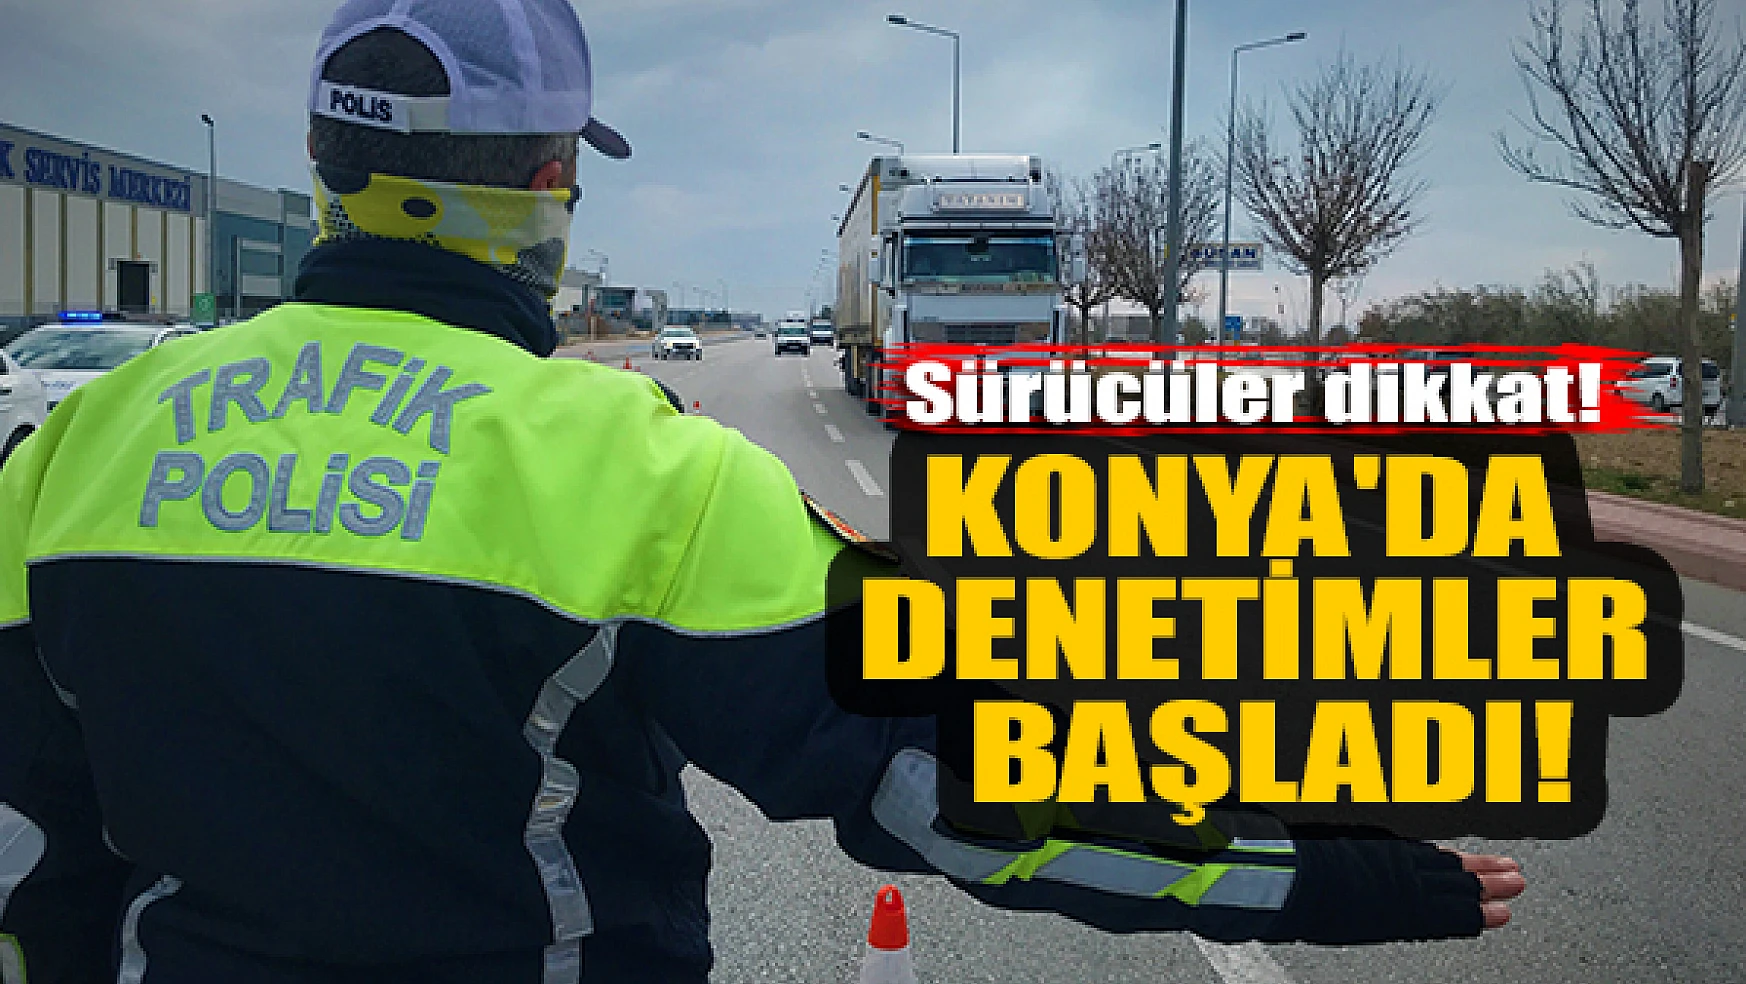 Sürücüler dikkat! Konya'da denetimler başladı!